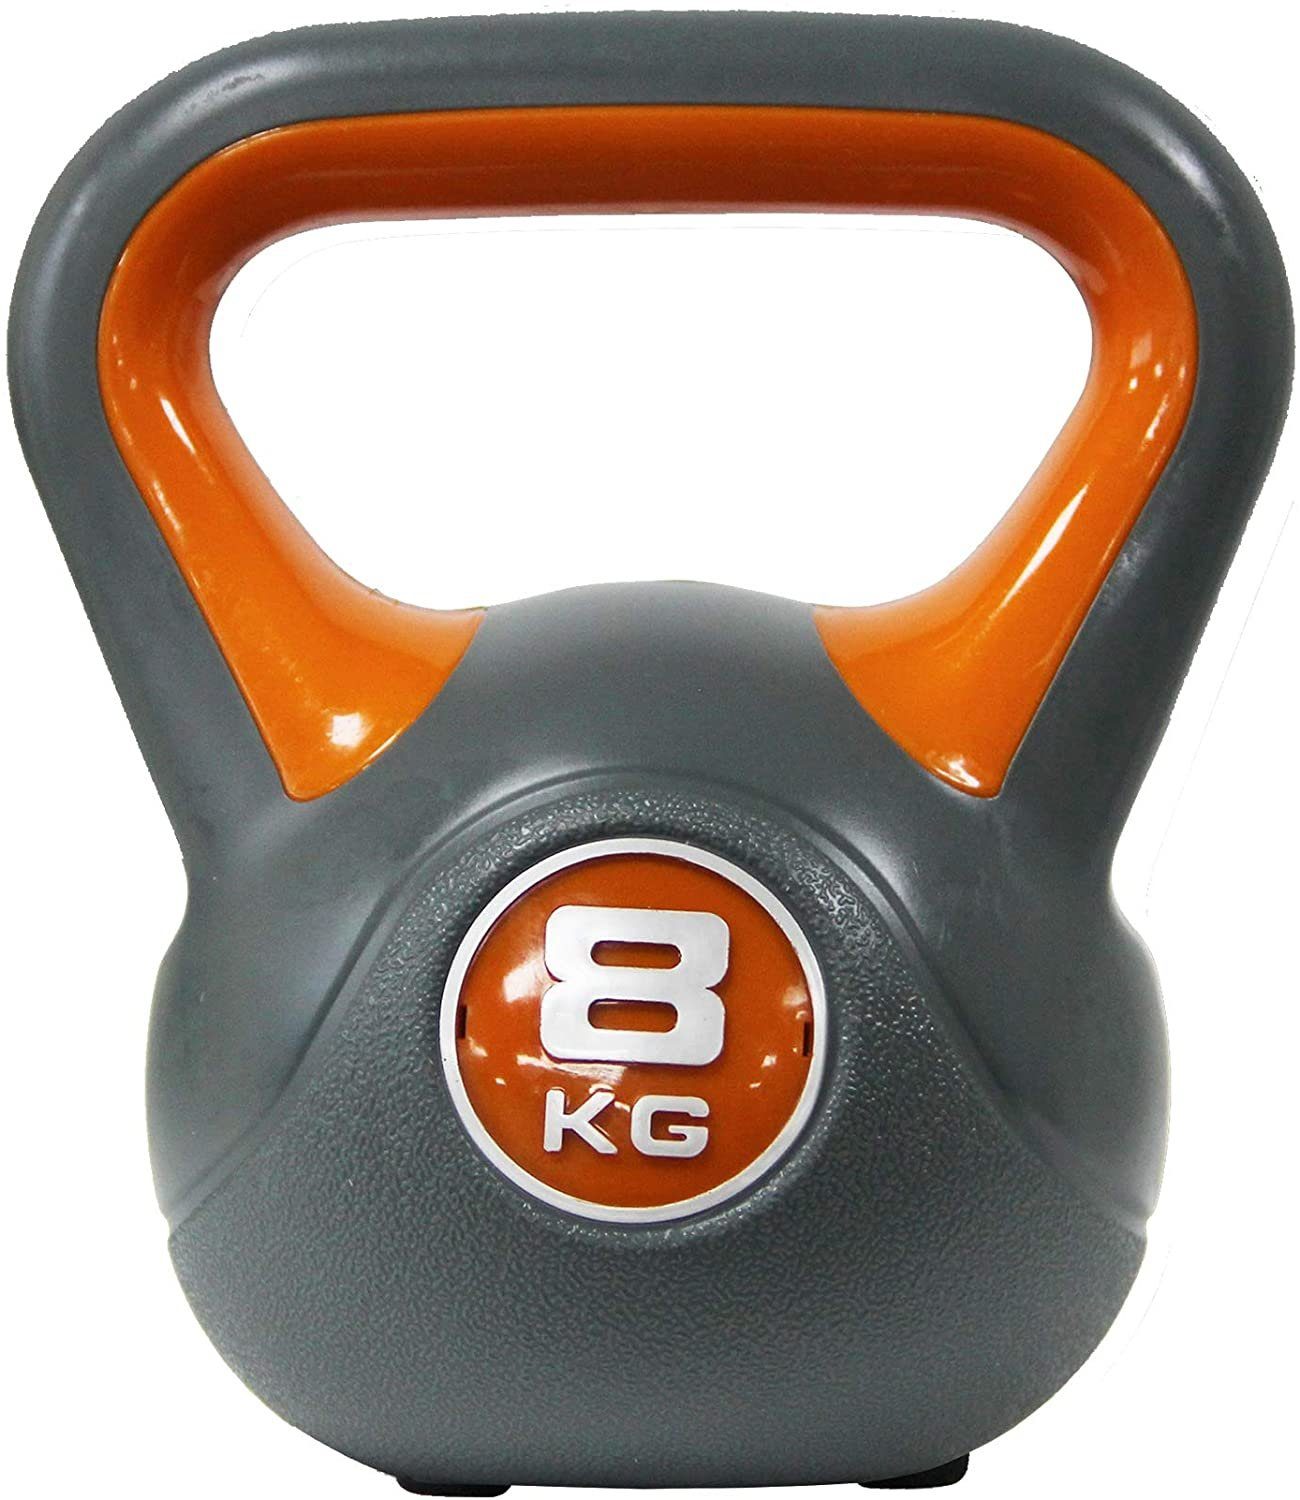 inkl. Kugelhantel 2-20 Kg POWRX Braun - kg versch. Kettlebell Workout, Kunststoff 18 Farben/Gewichte,